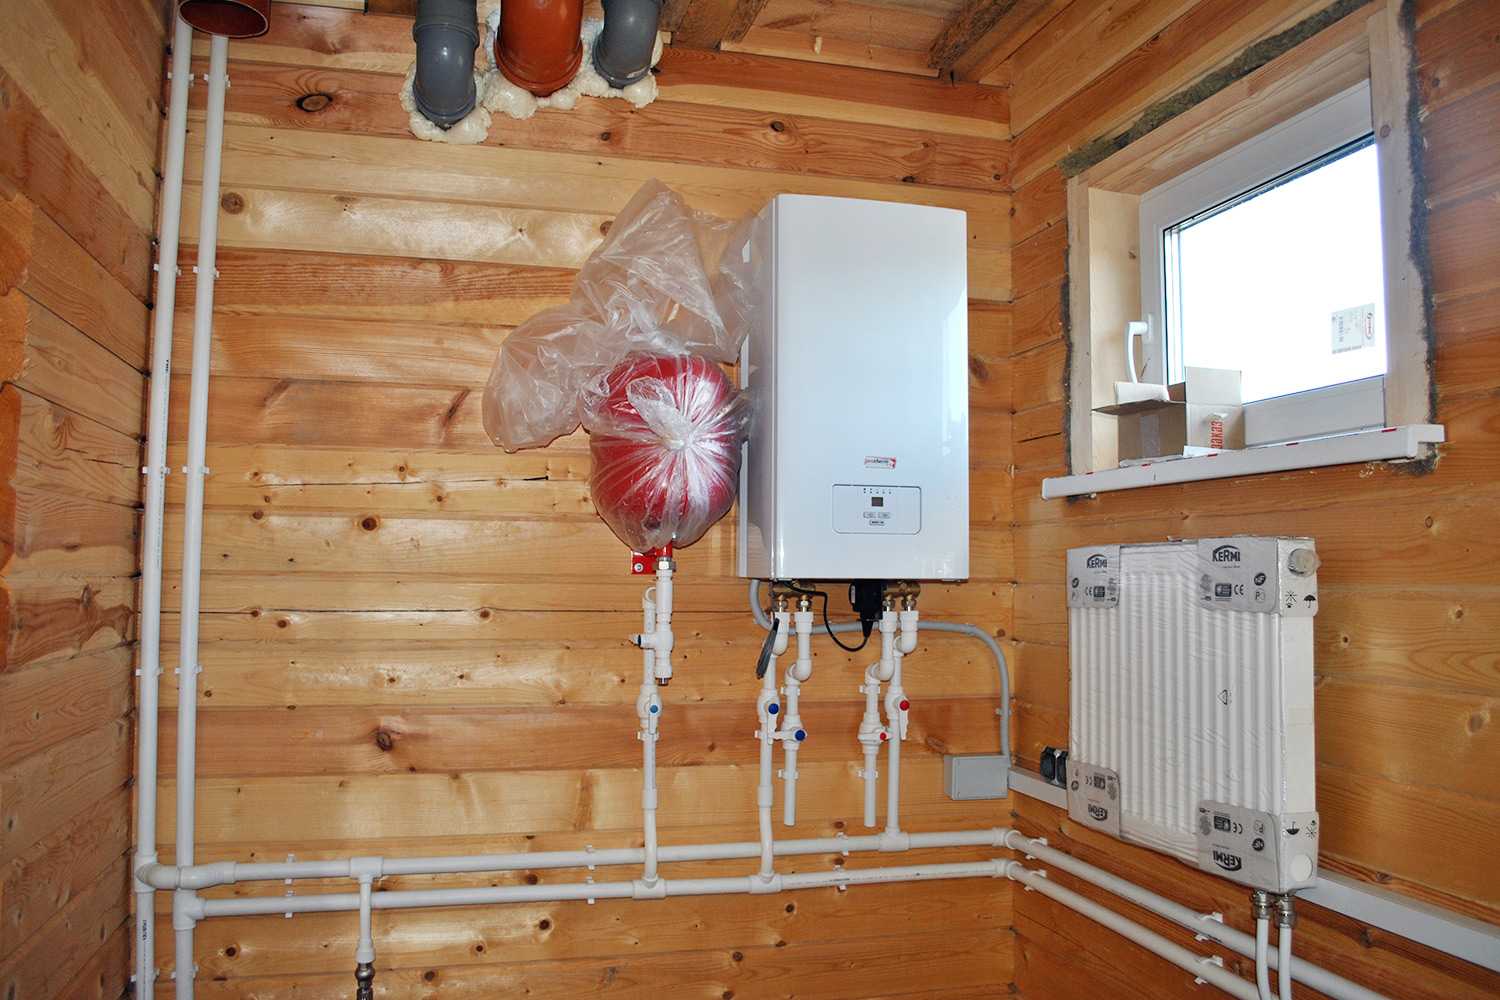 Электрическое отопление, системы водяного отопления, фото